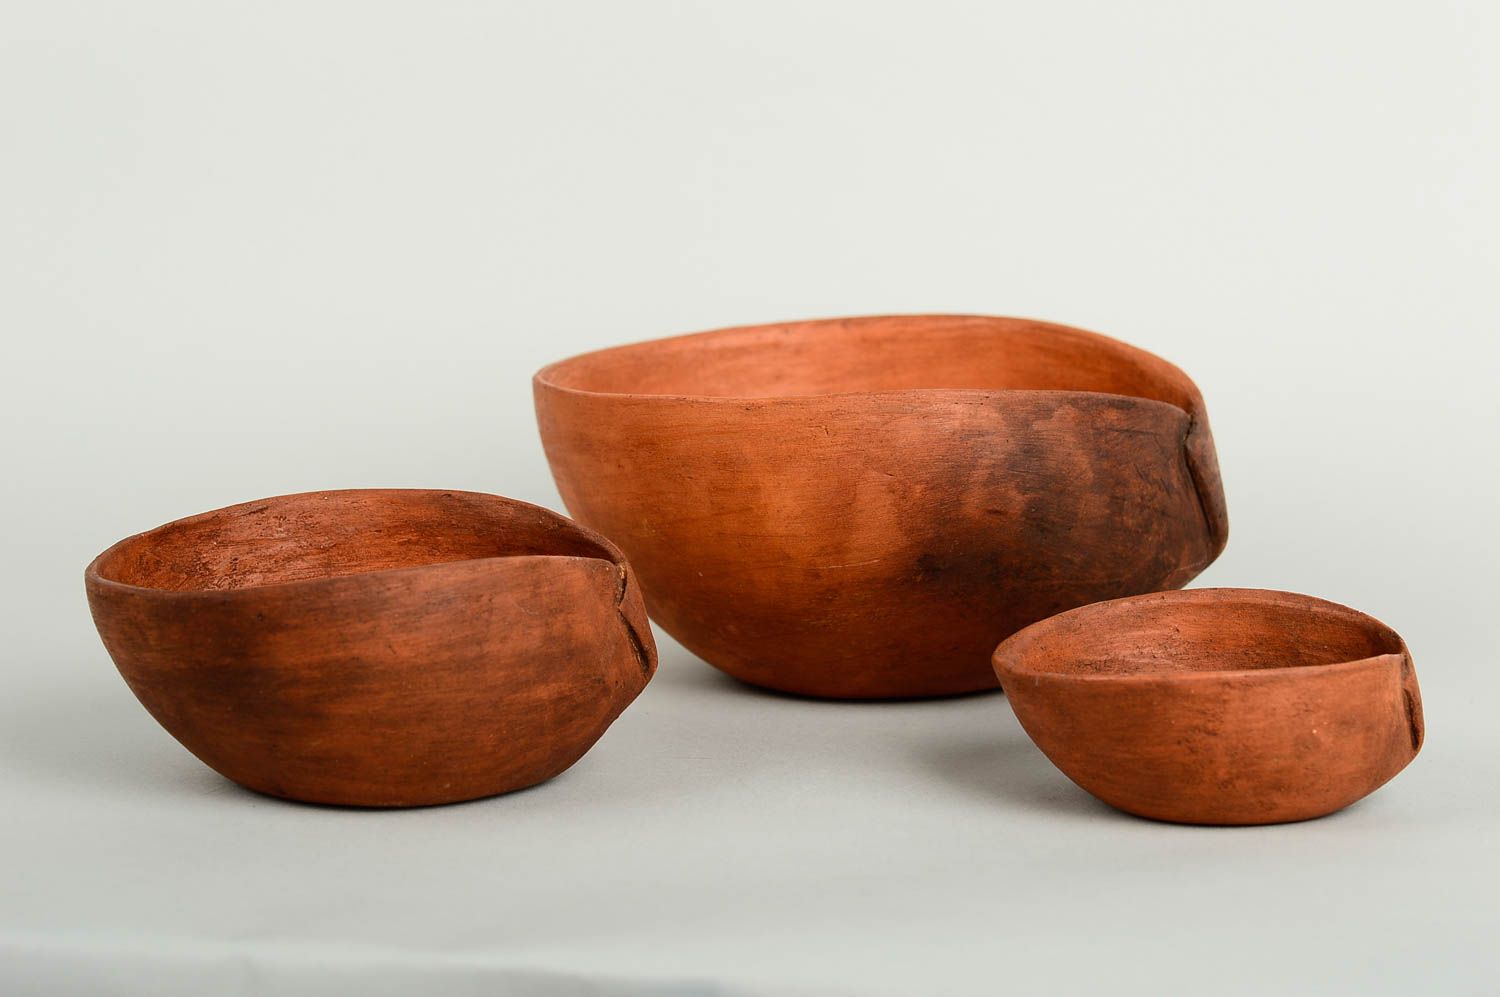 Handmade ceramic bowl 3 pieces home ceramics home goods table setting ideas photo 4